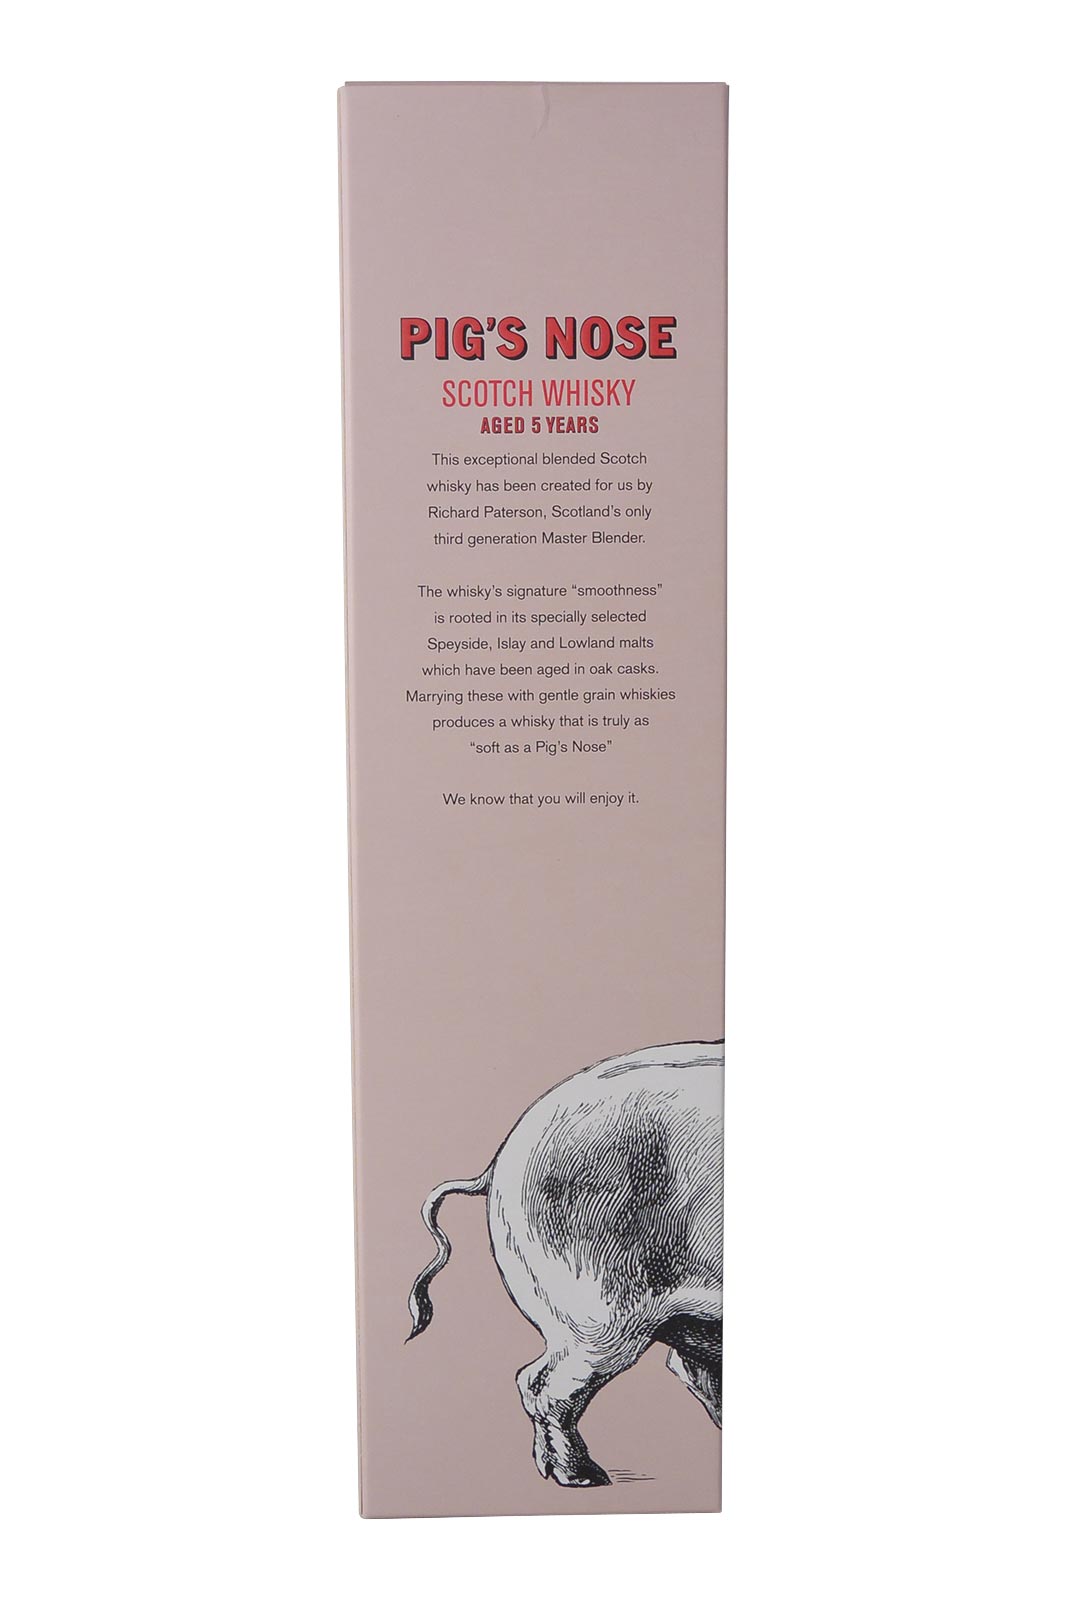 Pig's nose